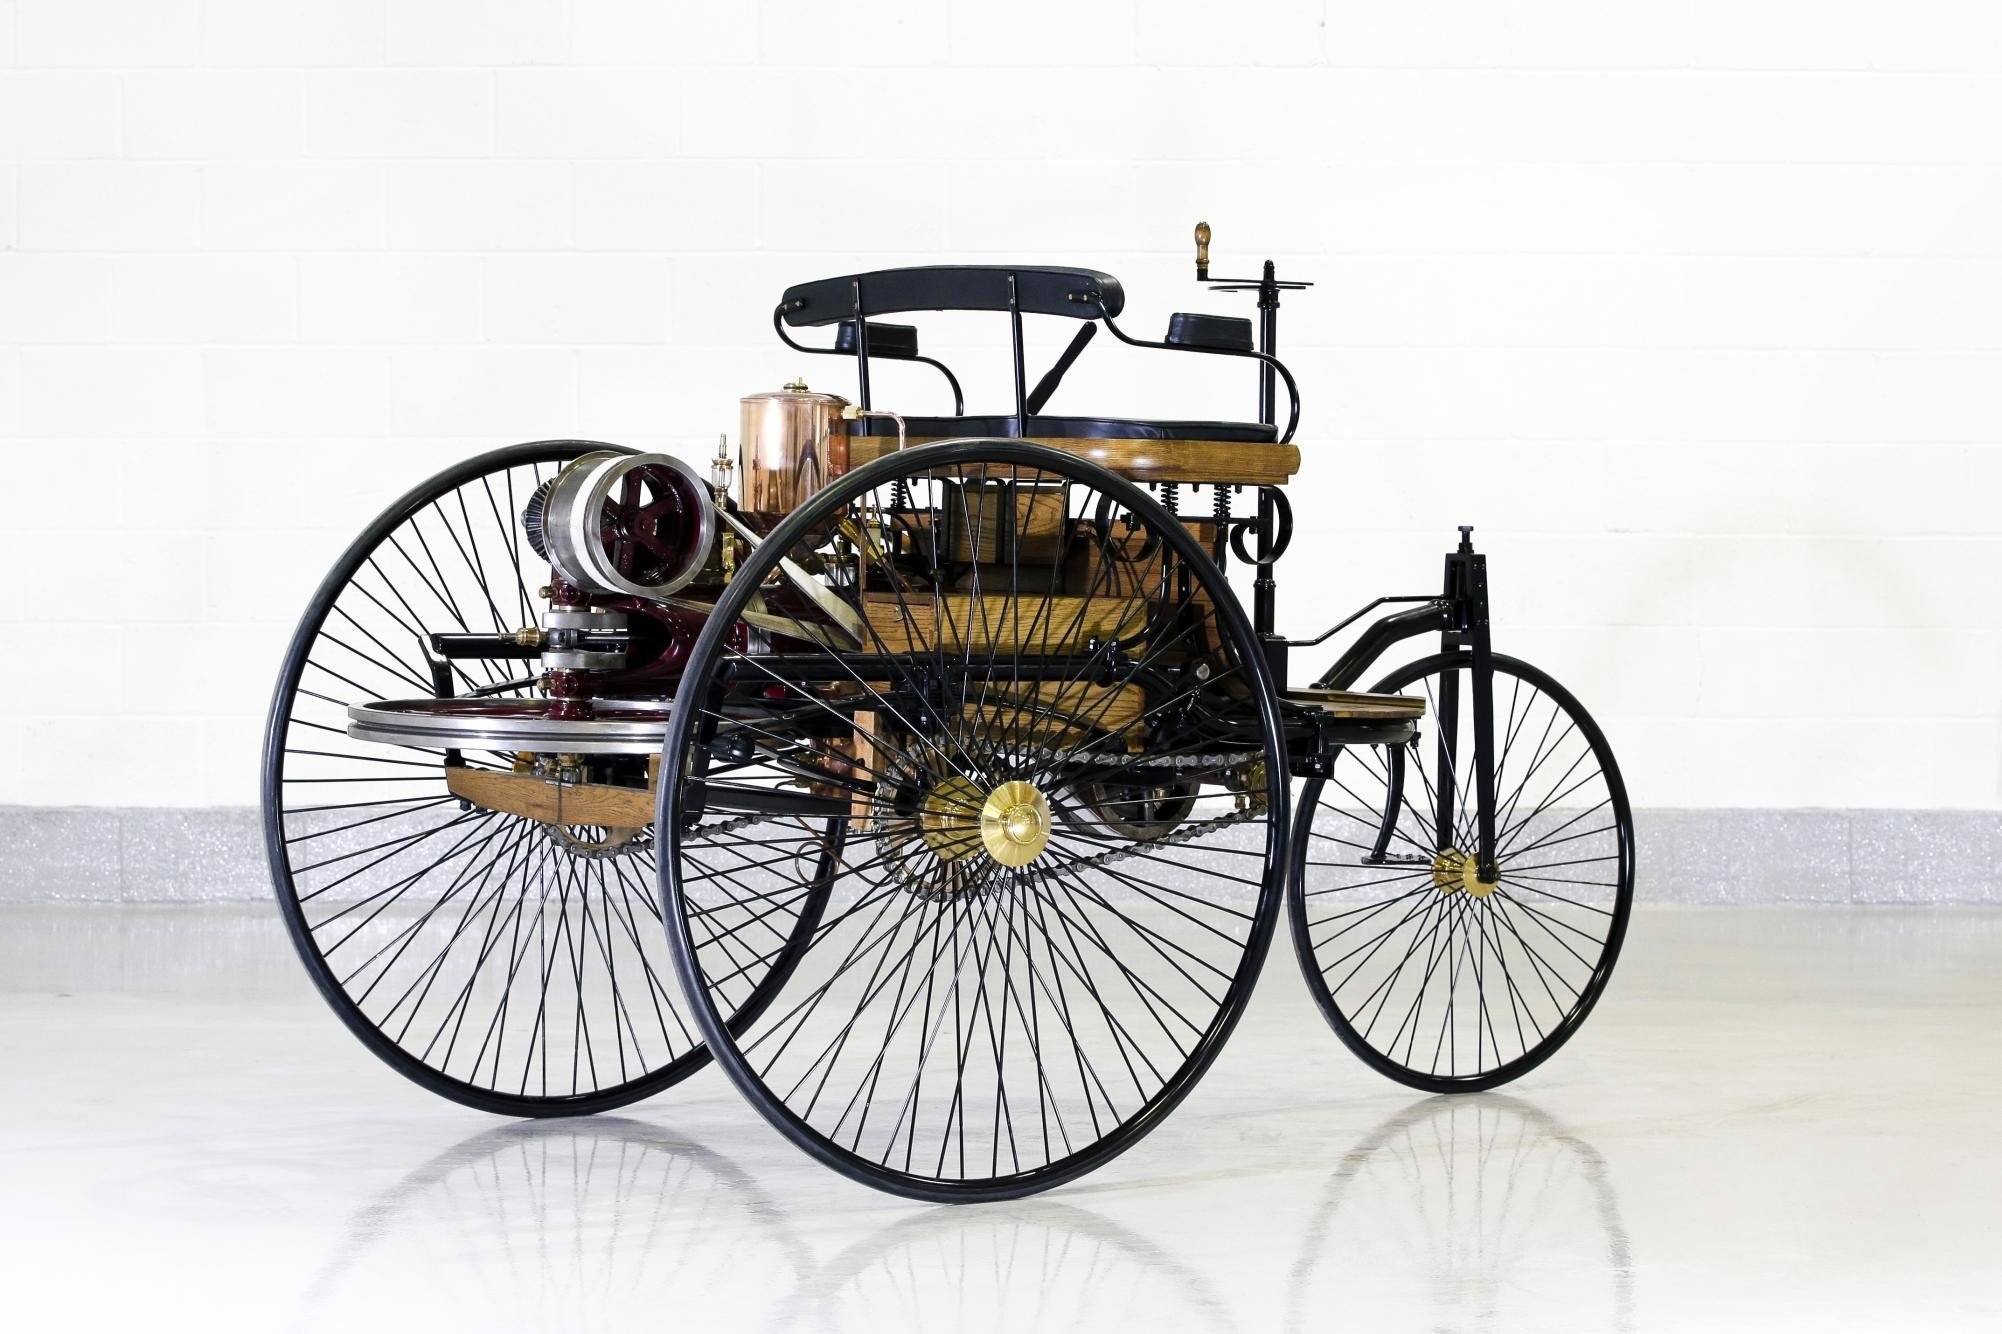 Первый автомобиль с двигателем сгорания. Benz Patent-Motorwagen 1886. Benz Patent-Motorwagen 1886 двигатель.